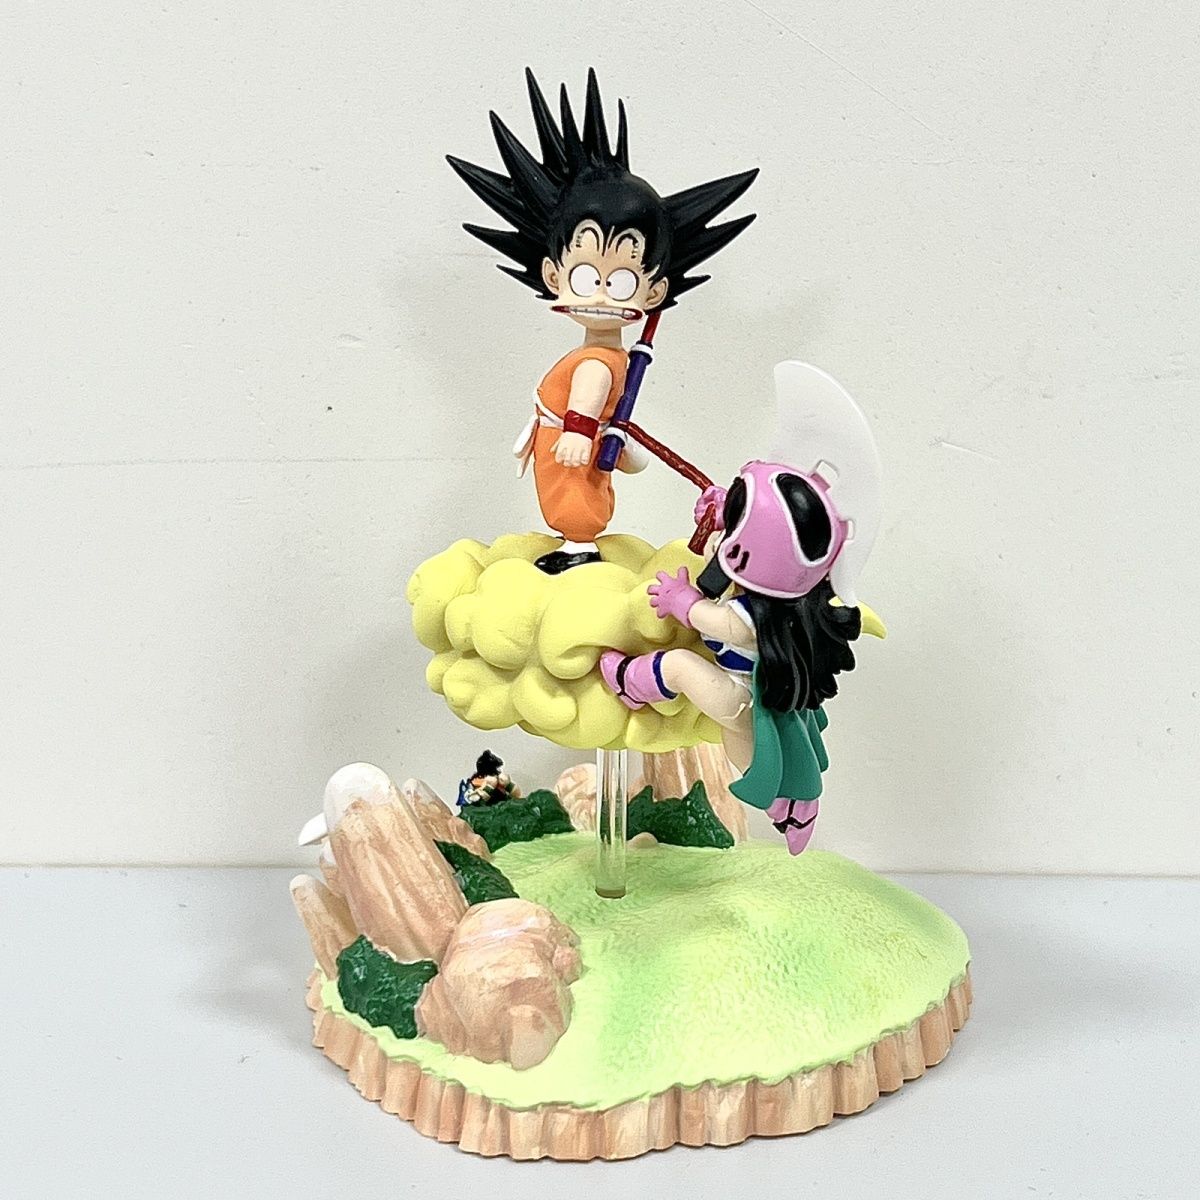 Figurine Dragon Ball : Goku & Chichi